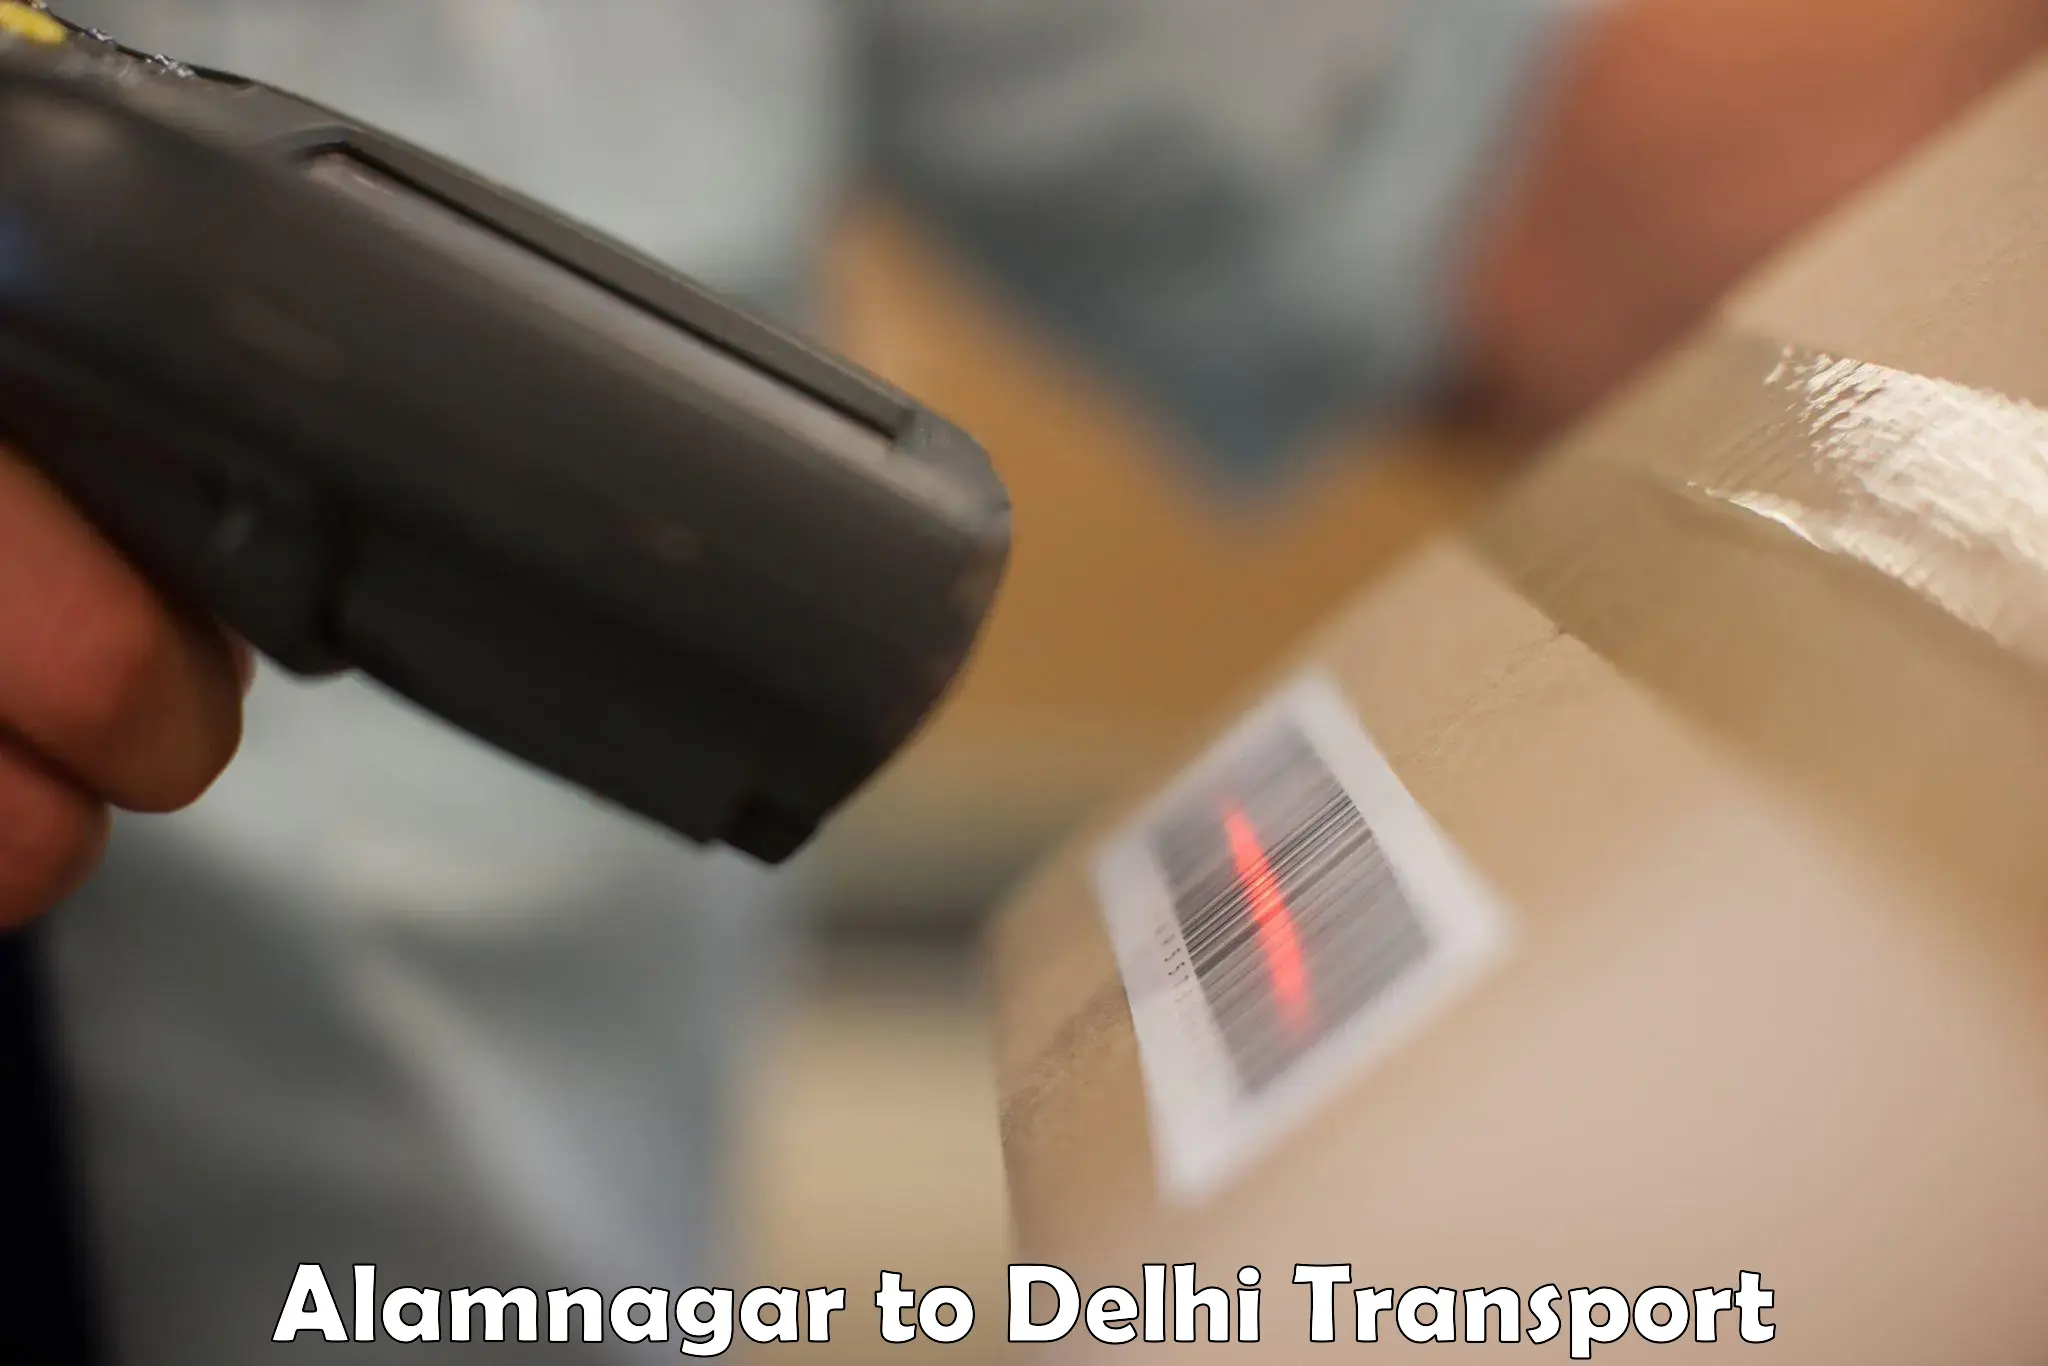 Transportation solution services Alamnagar to NIT Delhi